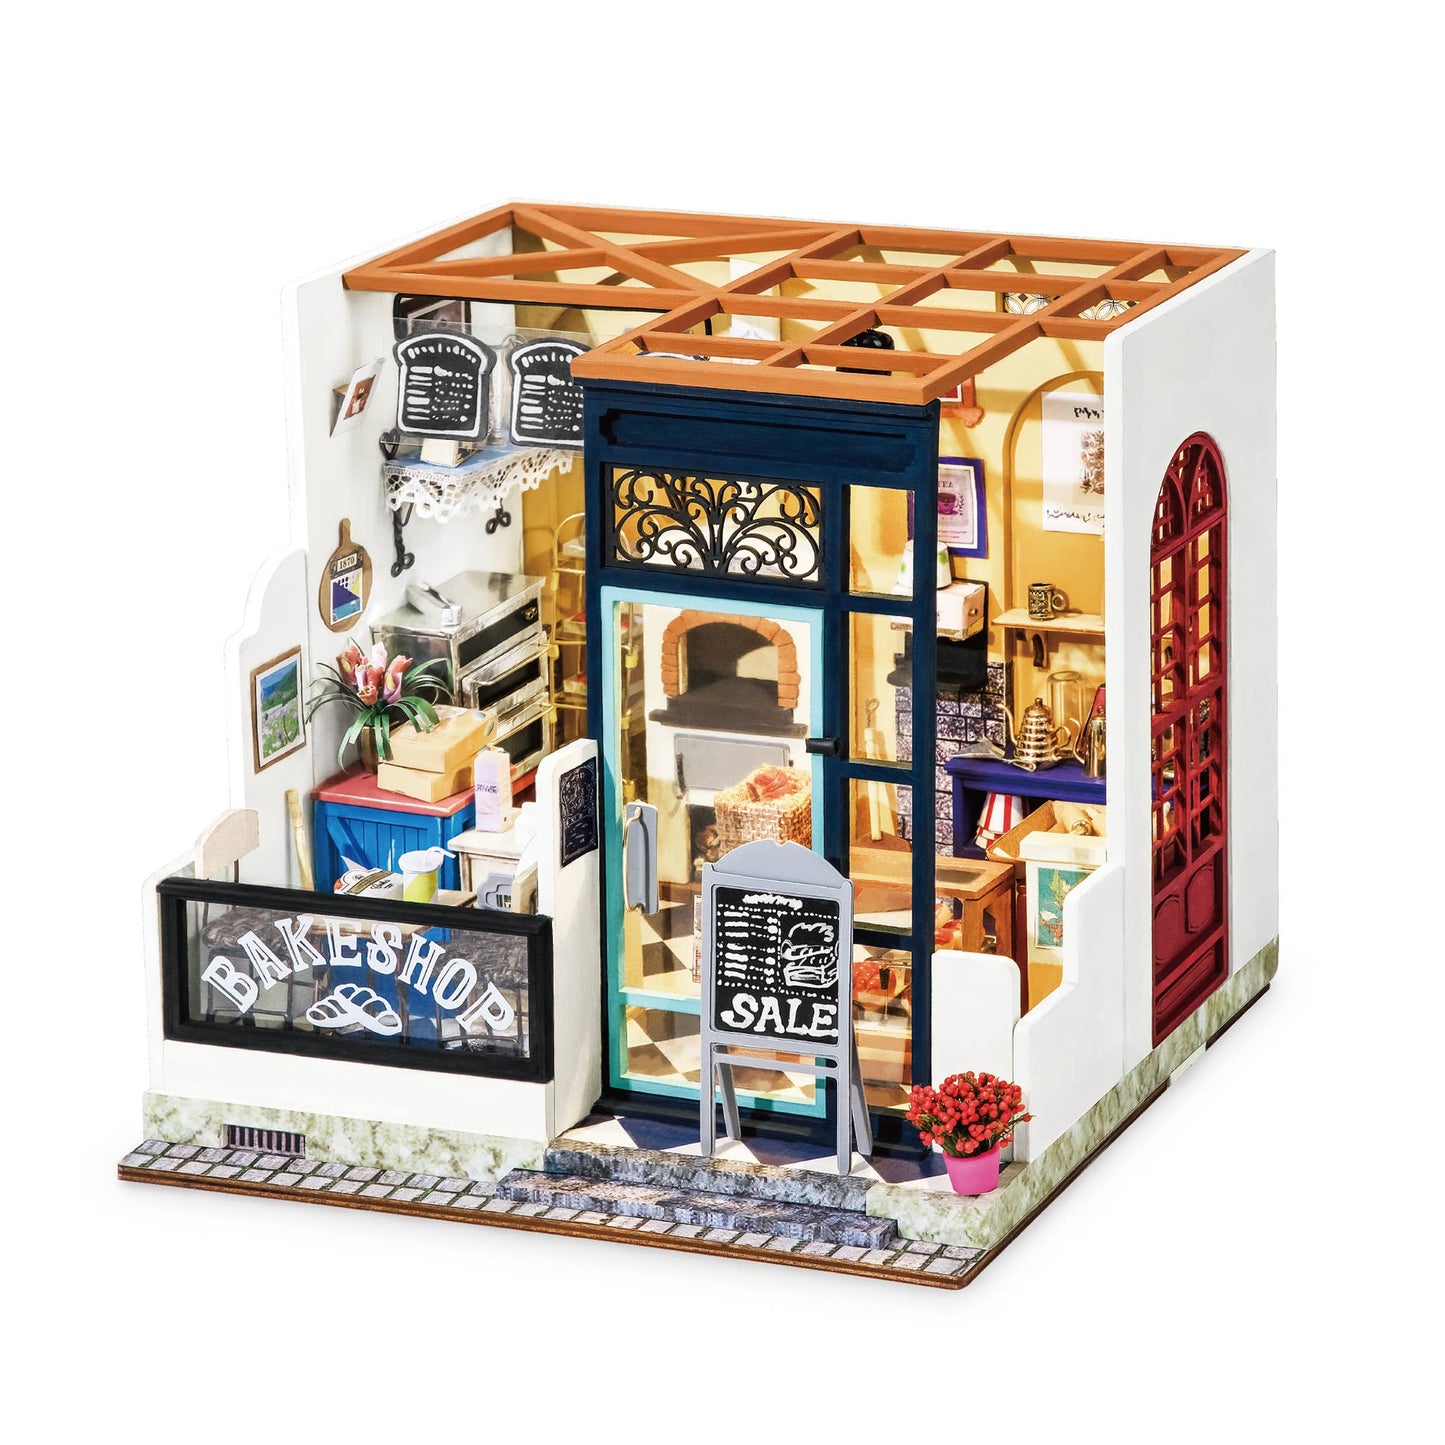 DIY Miniature House Kit: Bake Shop